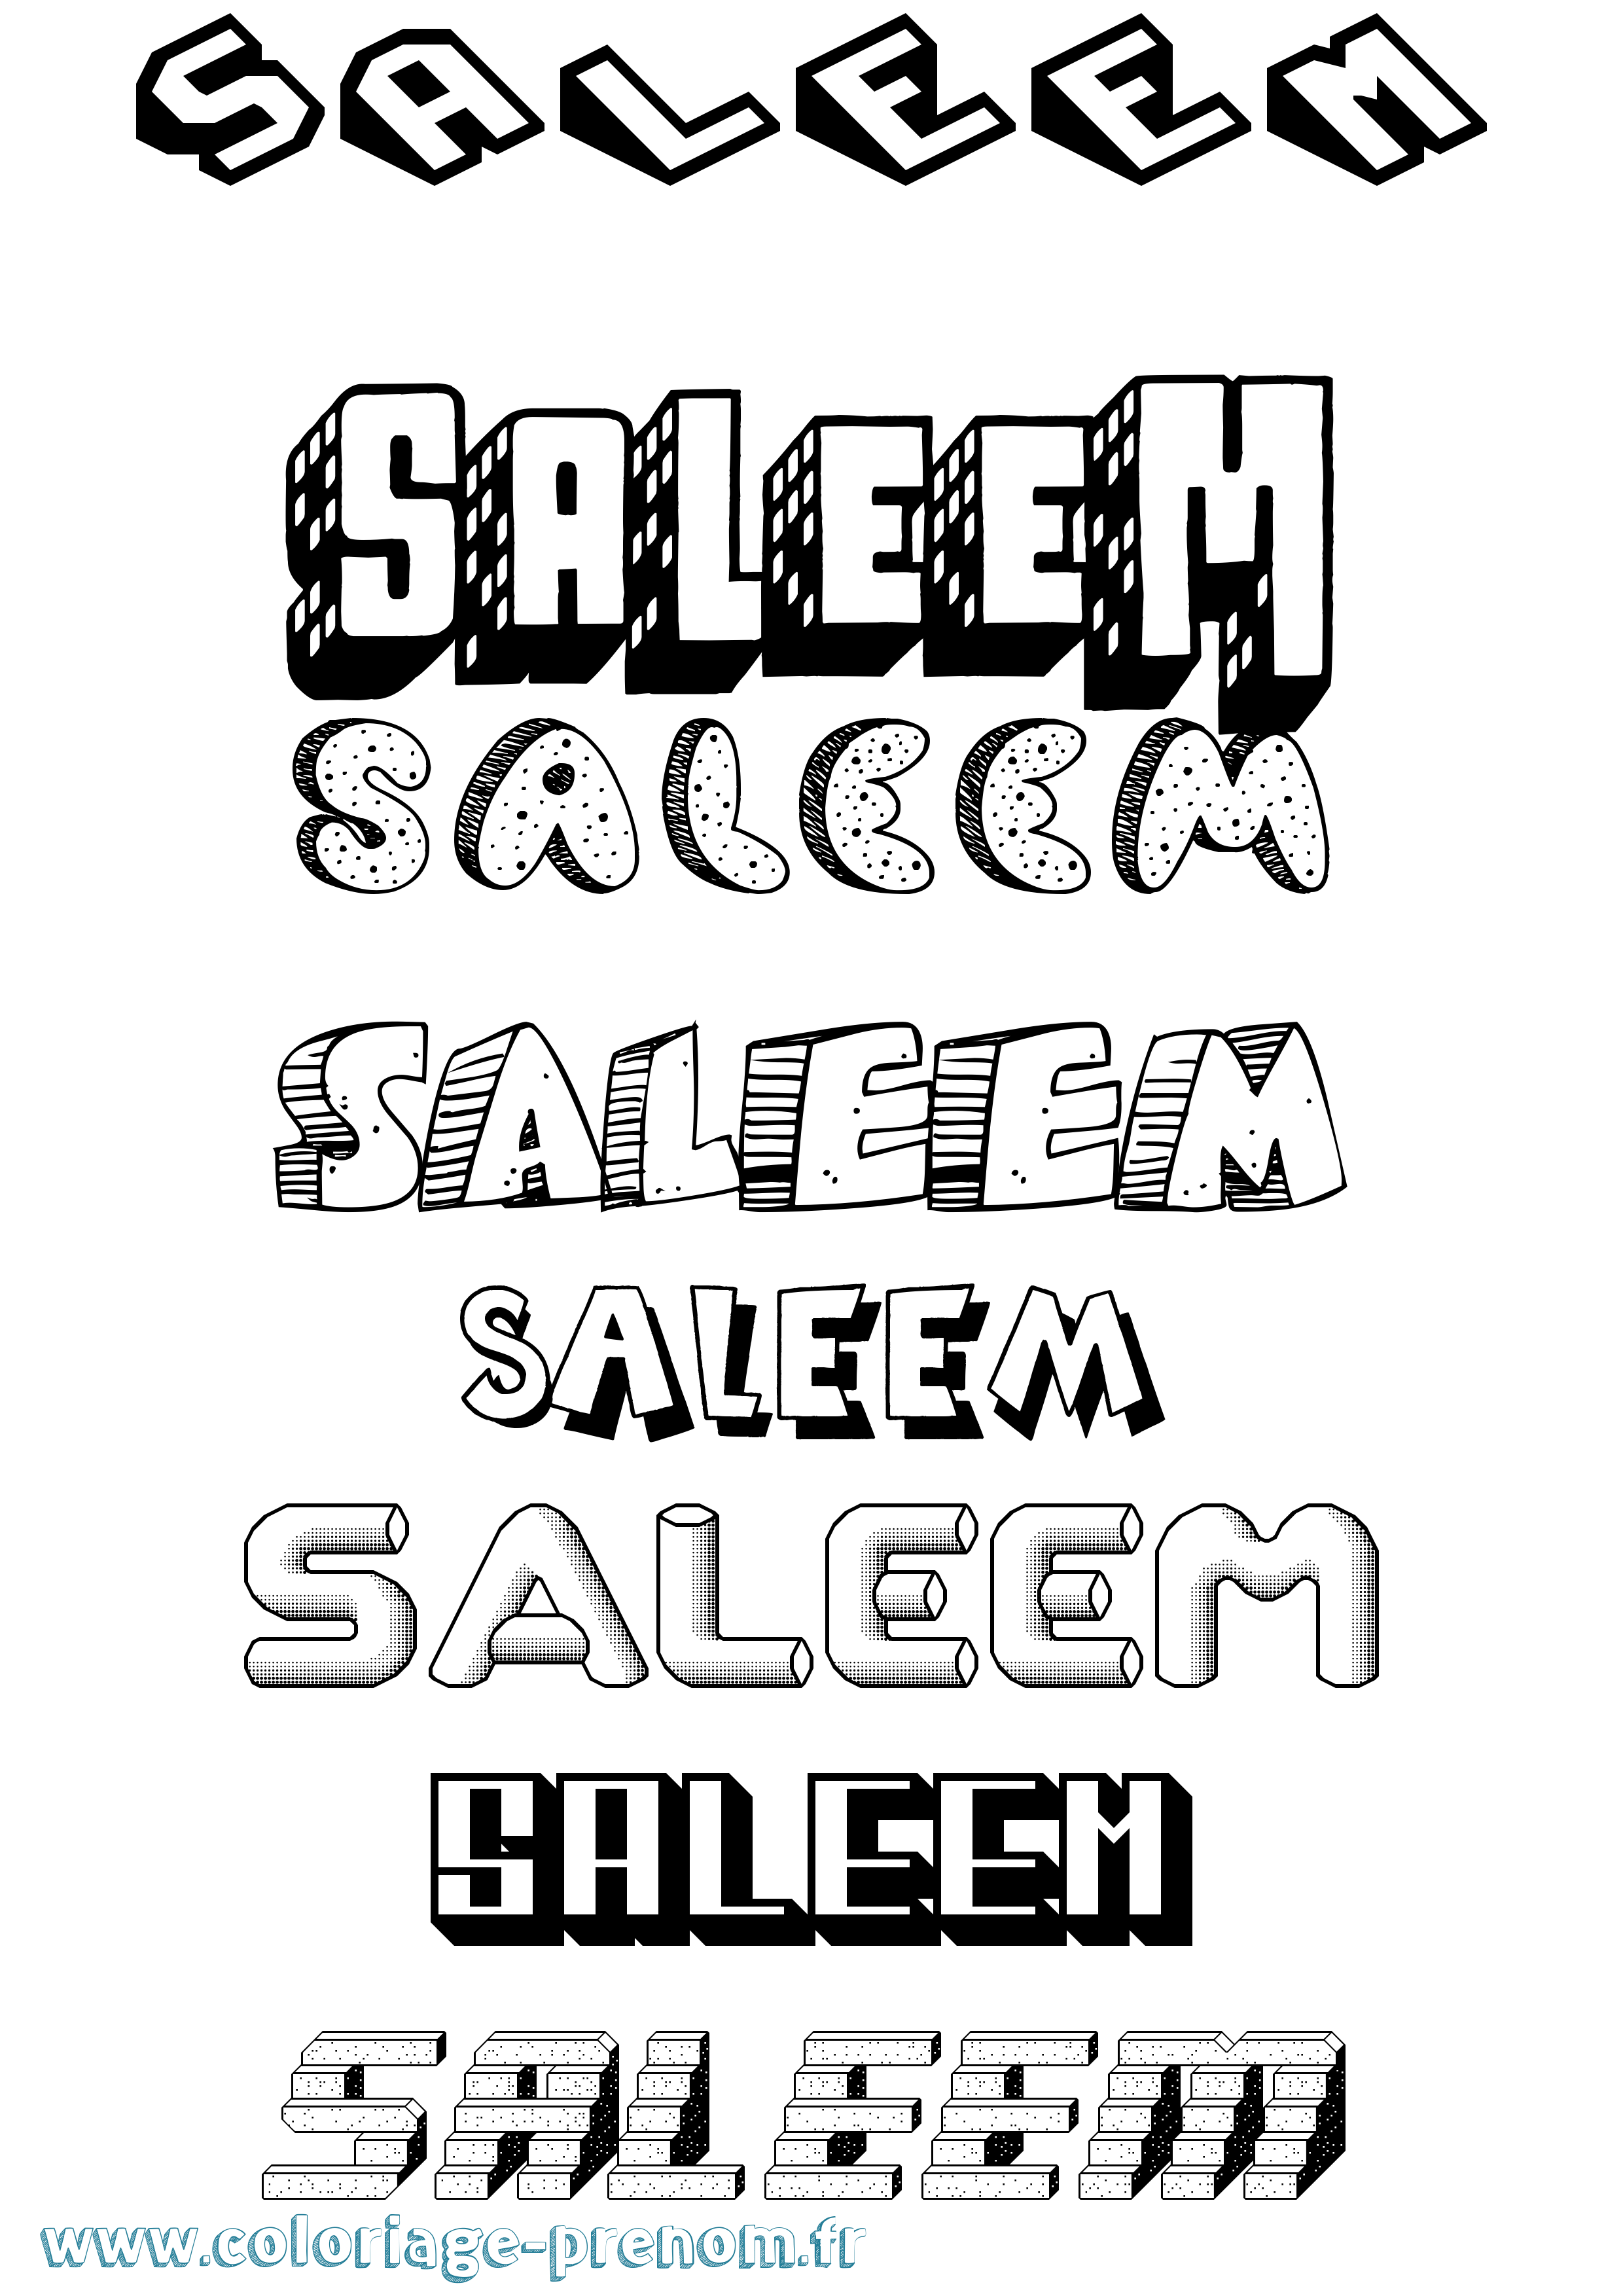 Coloriage prénom Saleem Effet 3D